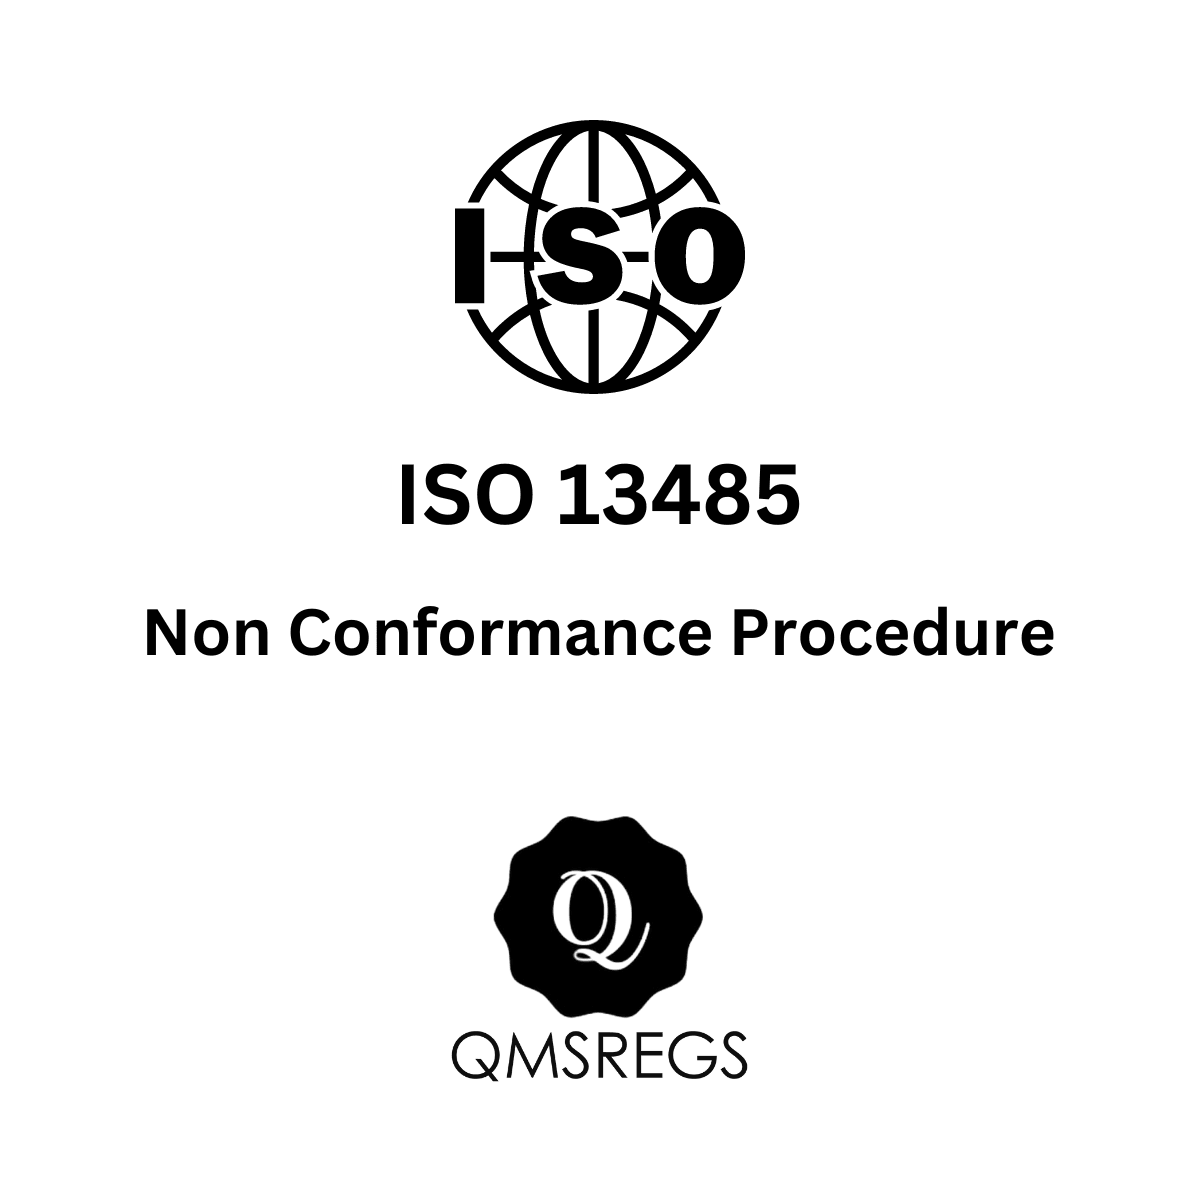 ISO 13485 Non Conformance Procedure